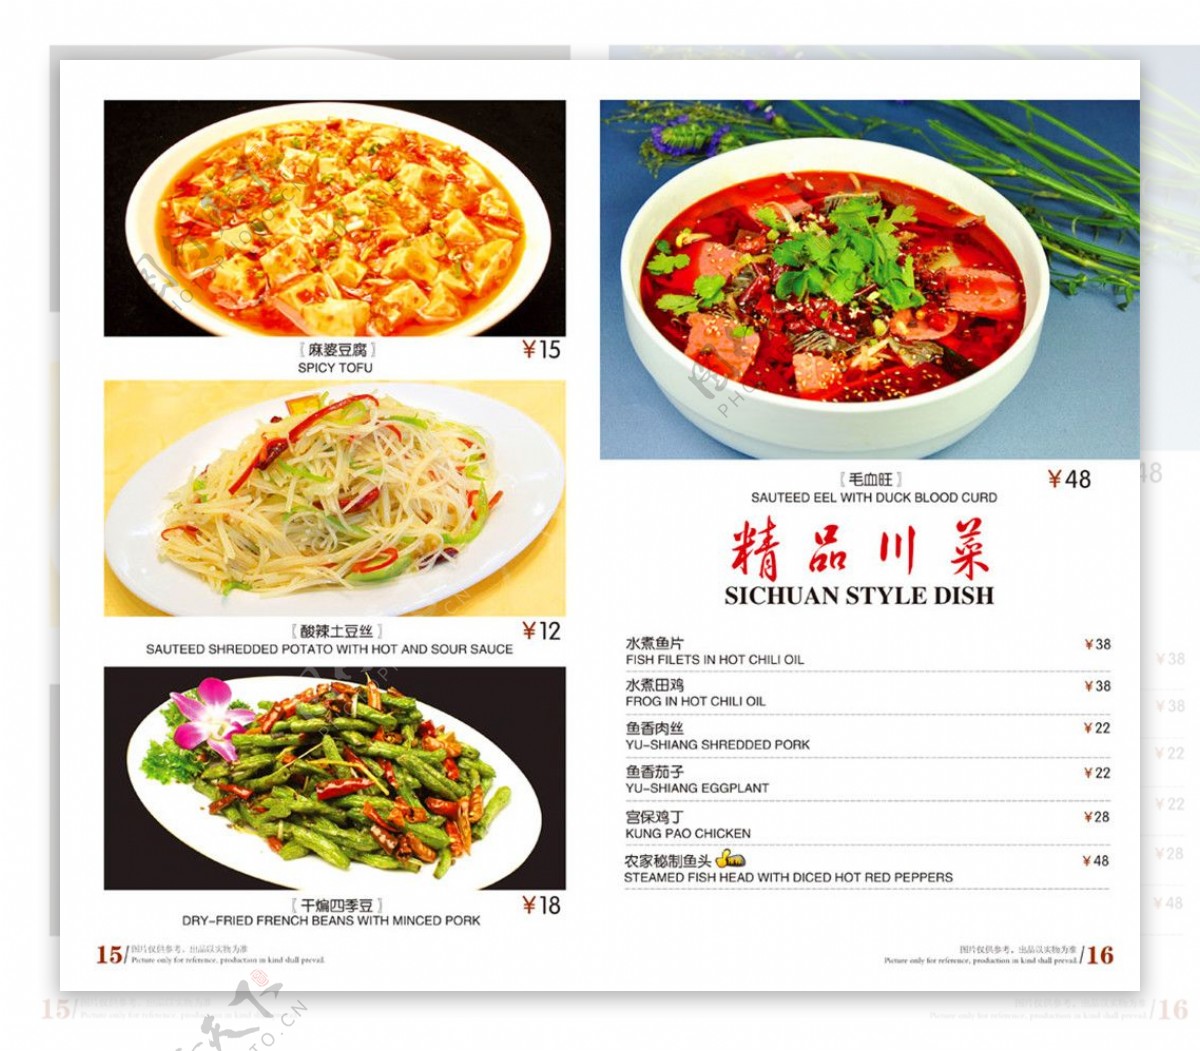 川菜菜单模板图片